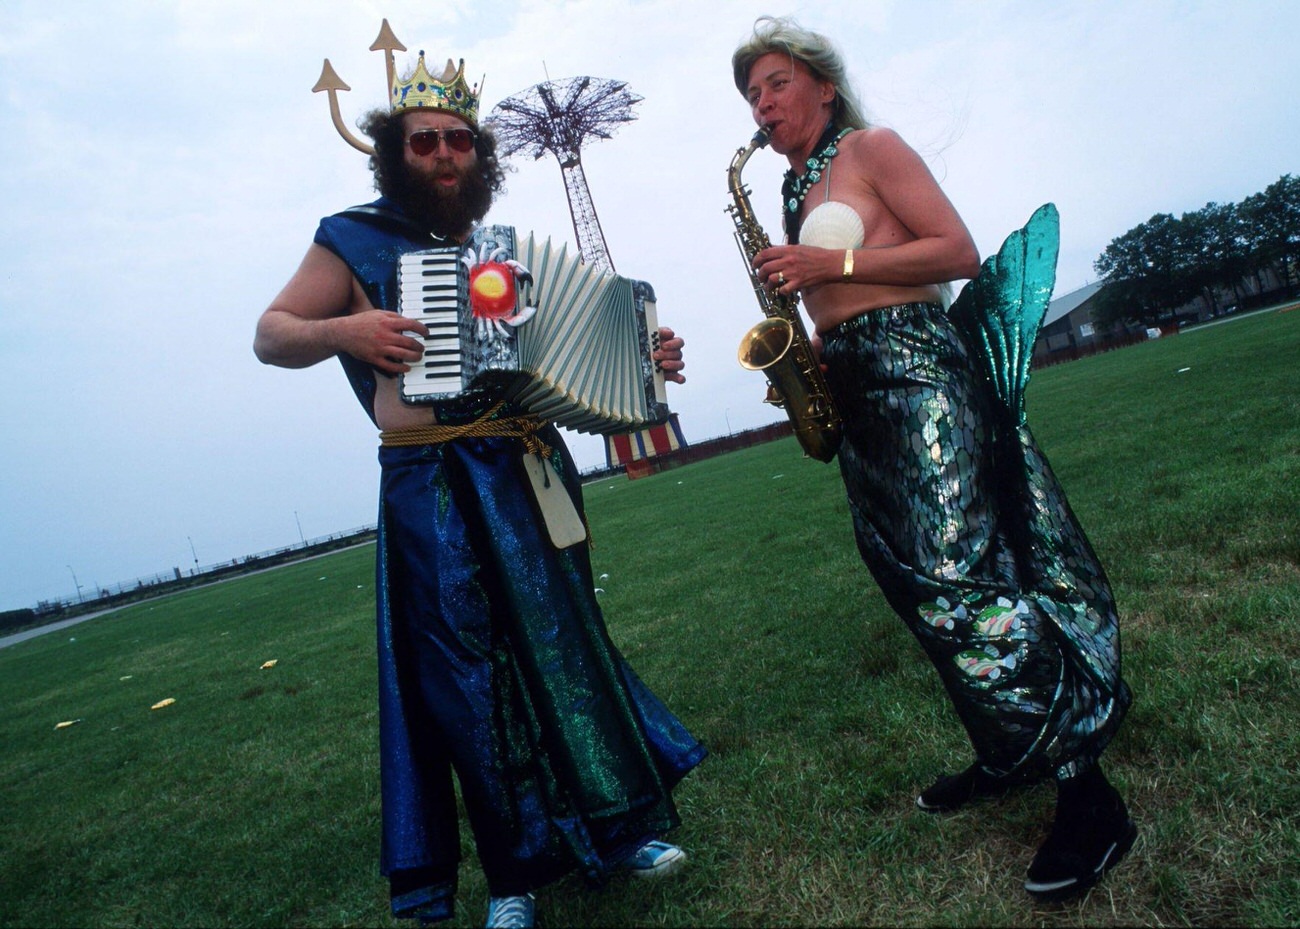 Mermaid And Merman Play Musical Instruments At Mermaid Parade, 1996